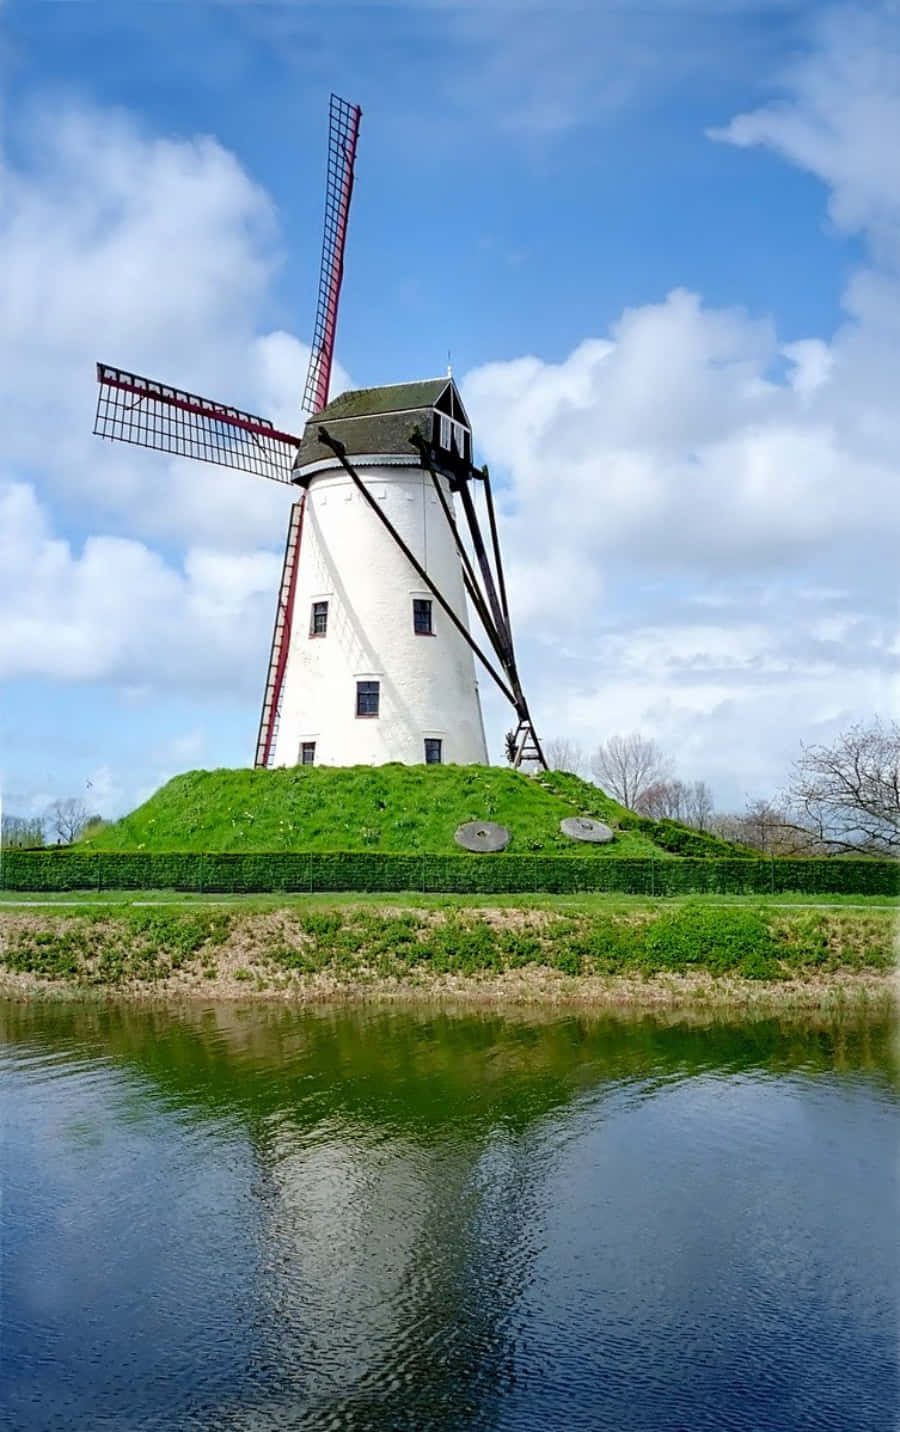 A Windmill in a Rolling Meadow